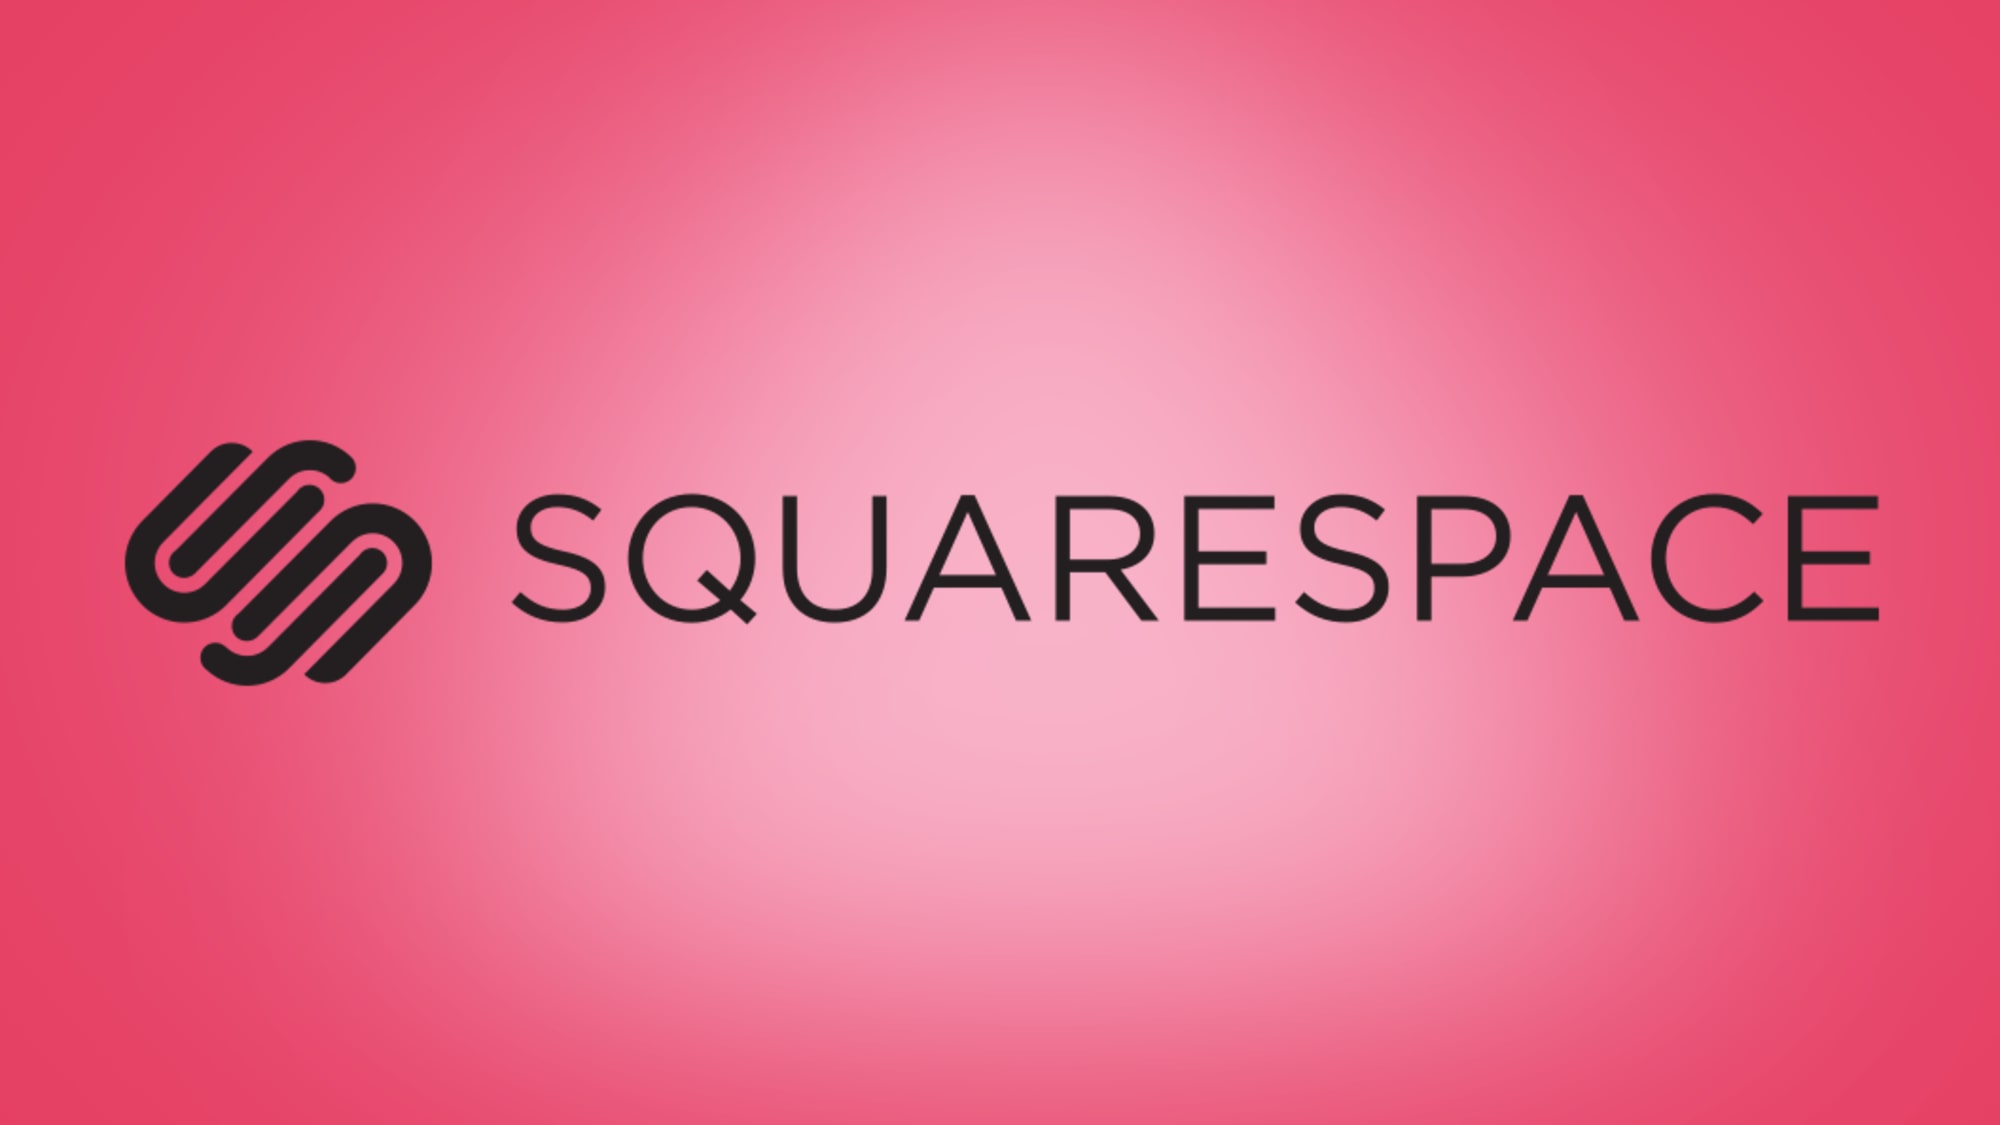 Squarespace делает создание веб-сайтов еще проще благодаря новому инструменту точного размещения